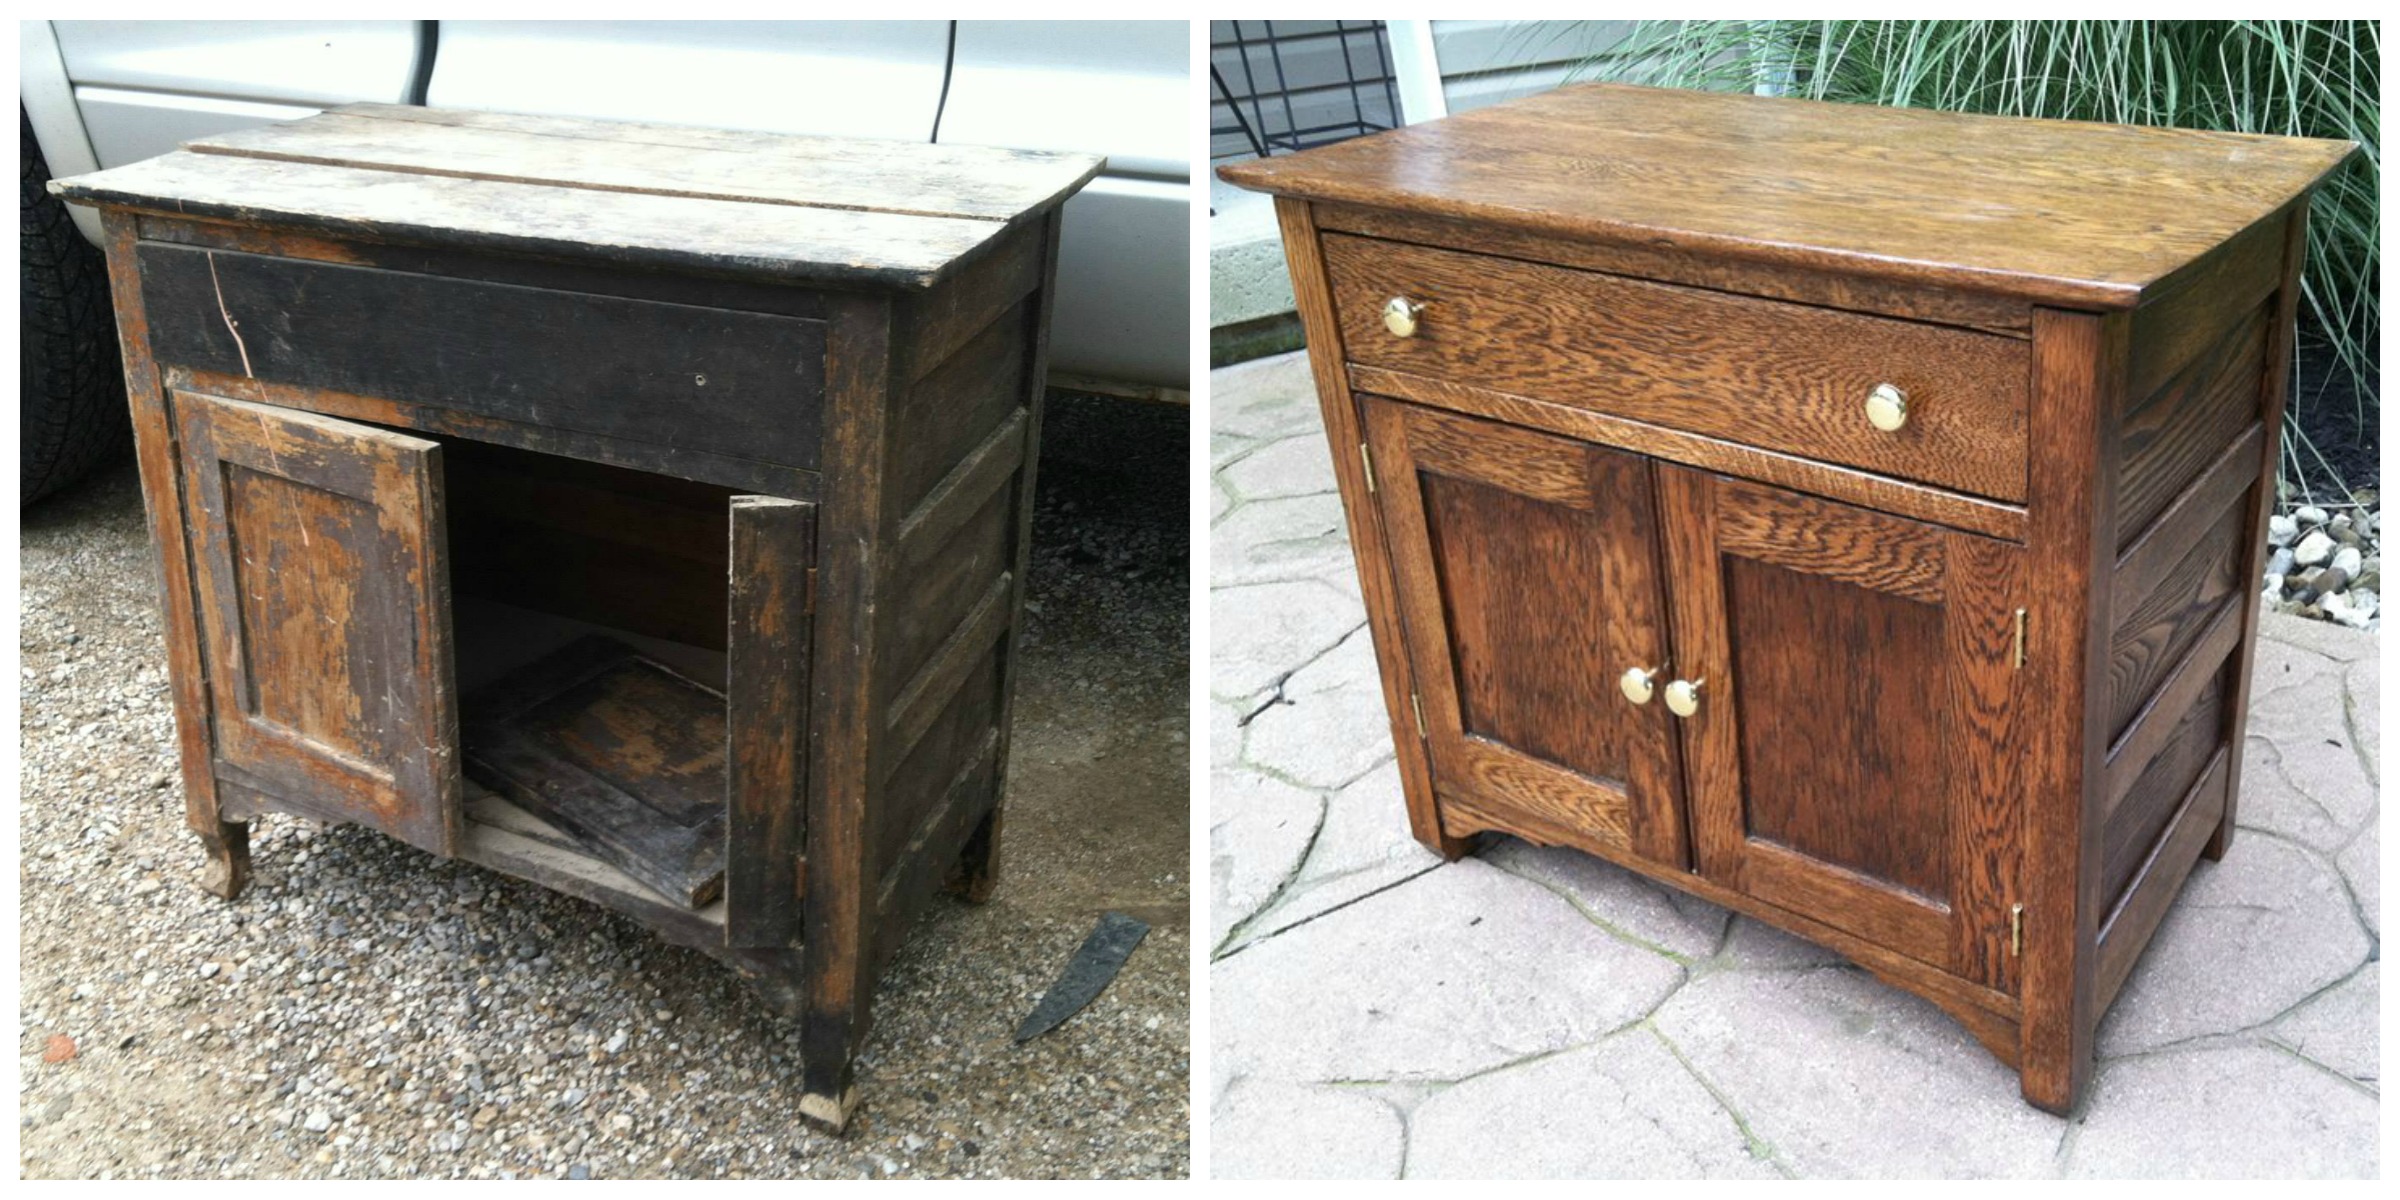 Antique Furniture Revival: Restoring Elegance